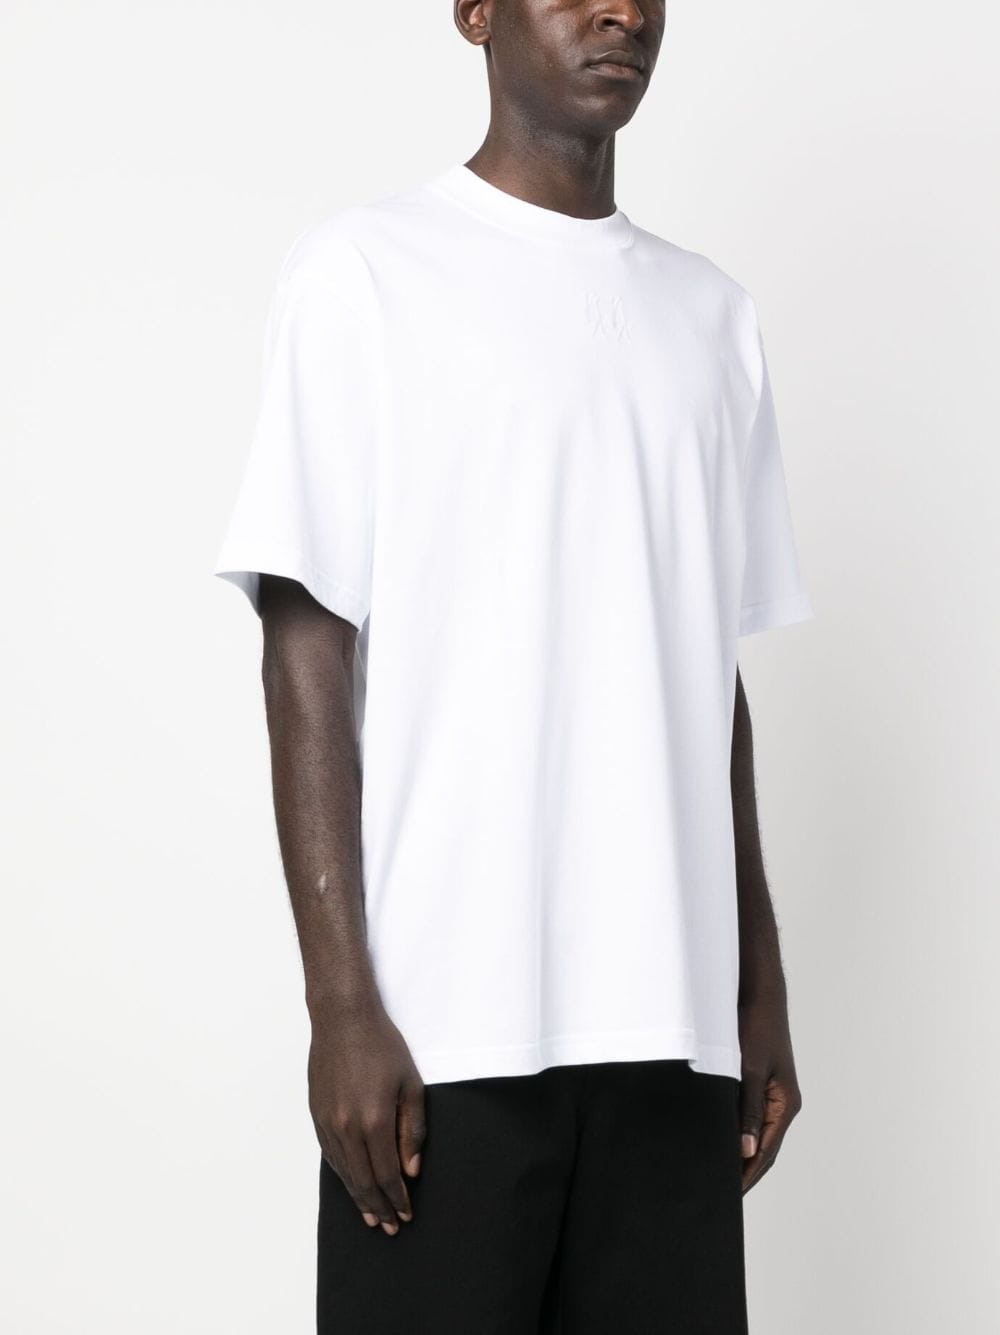 t-shirt blanc avec logo au dos